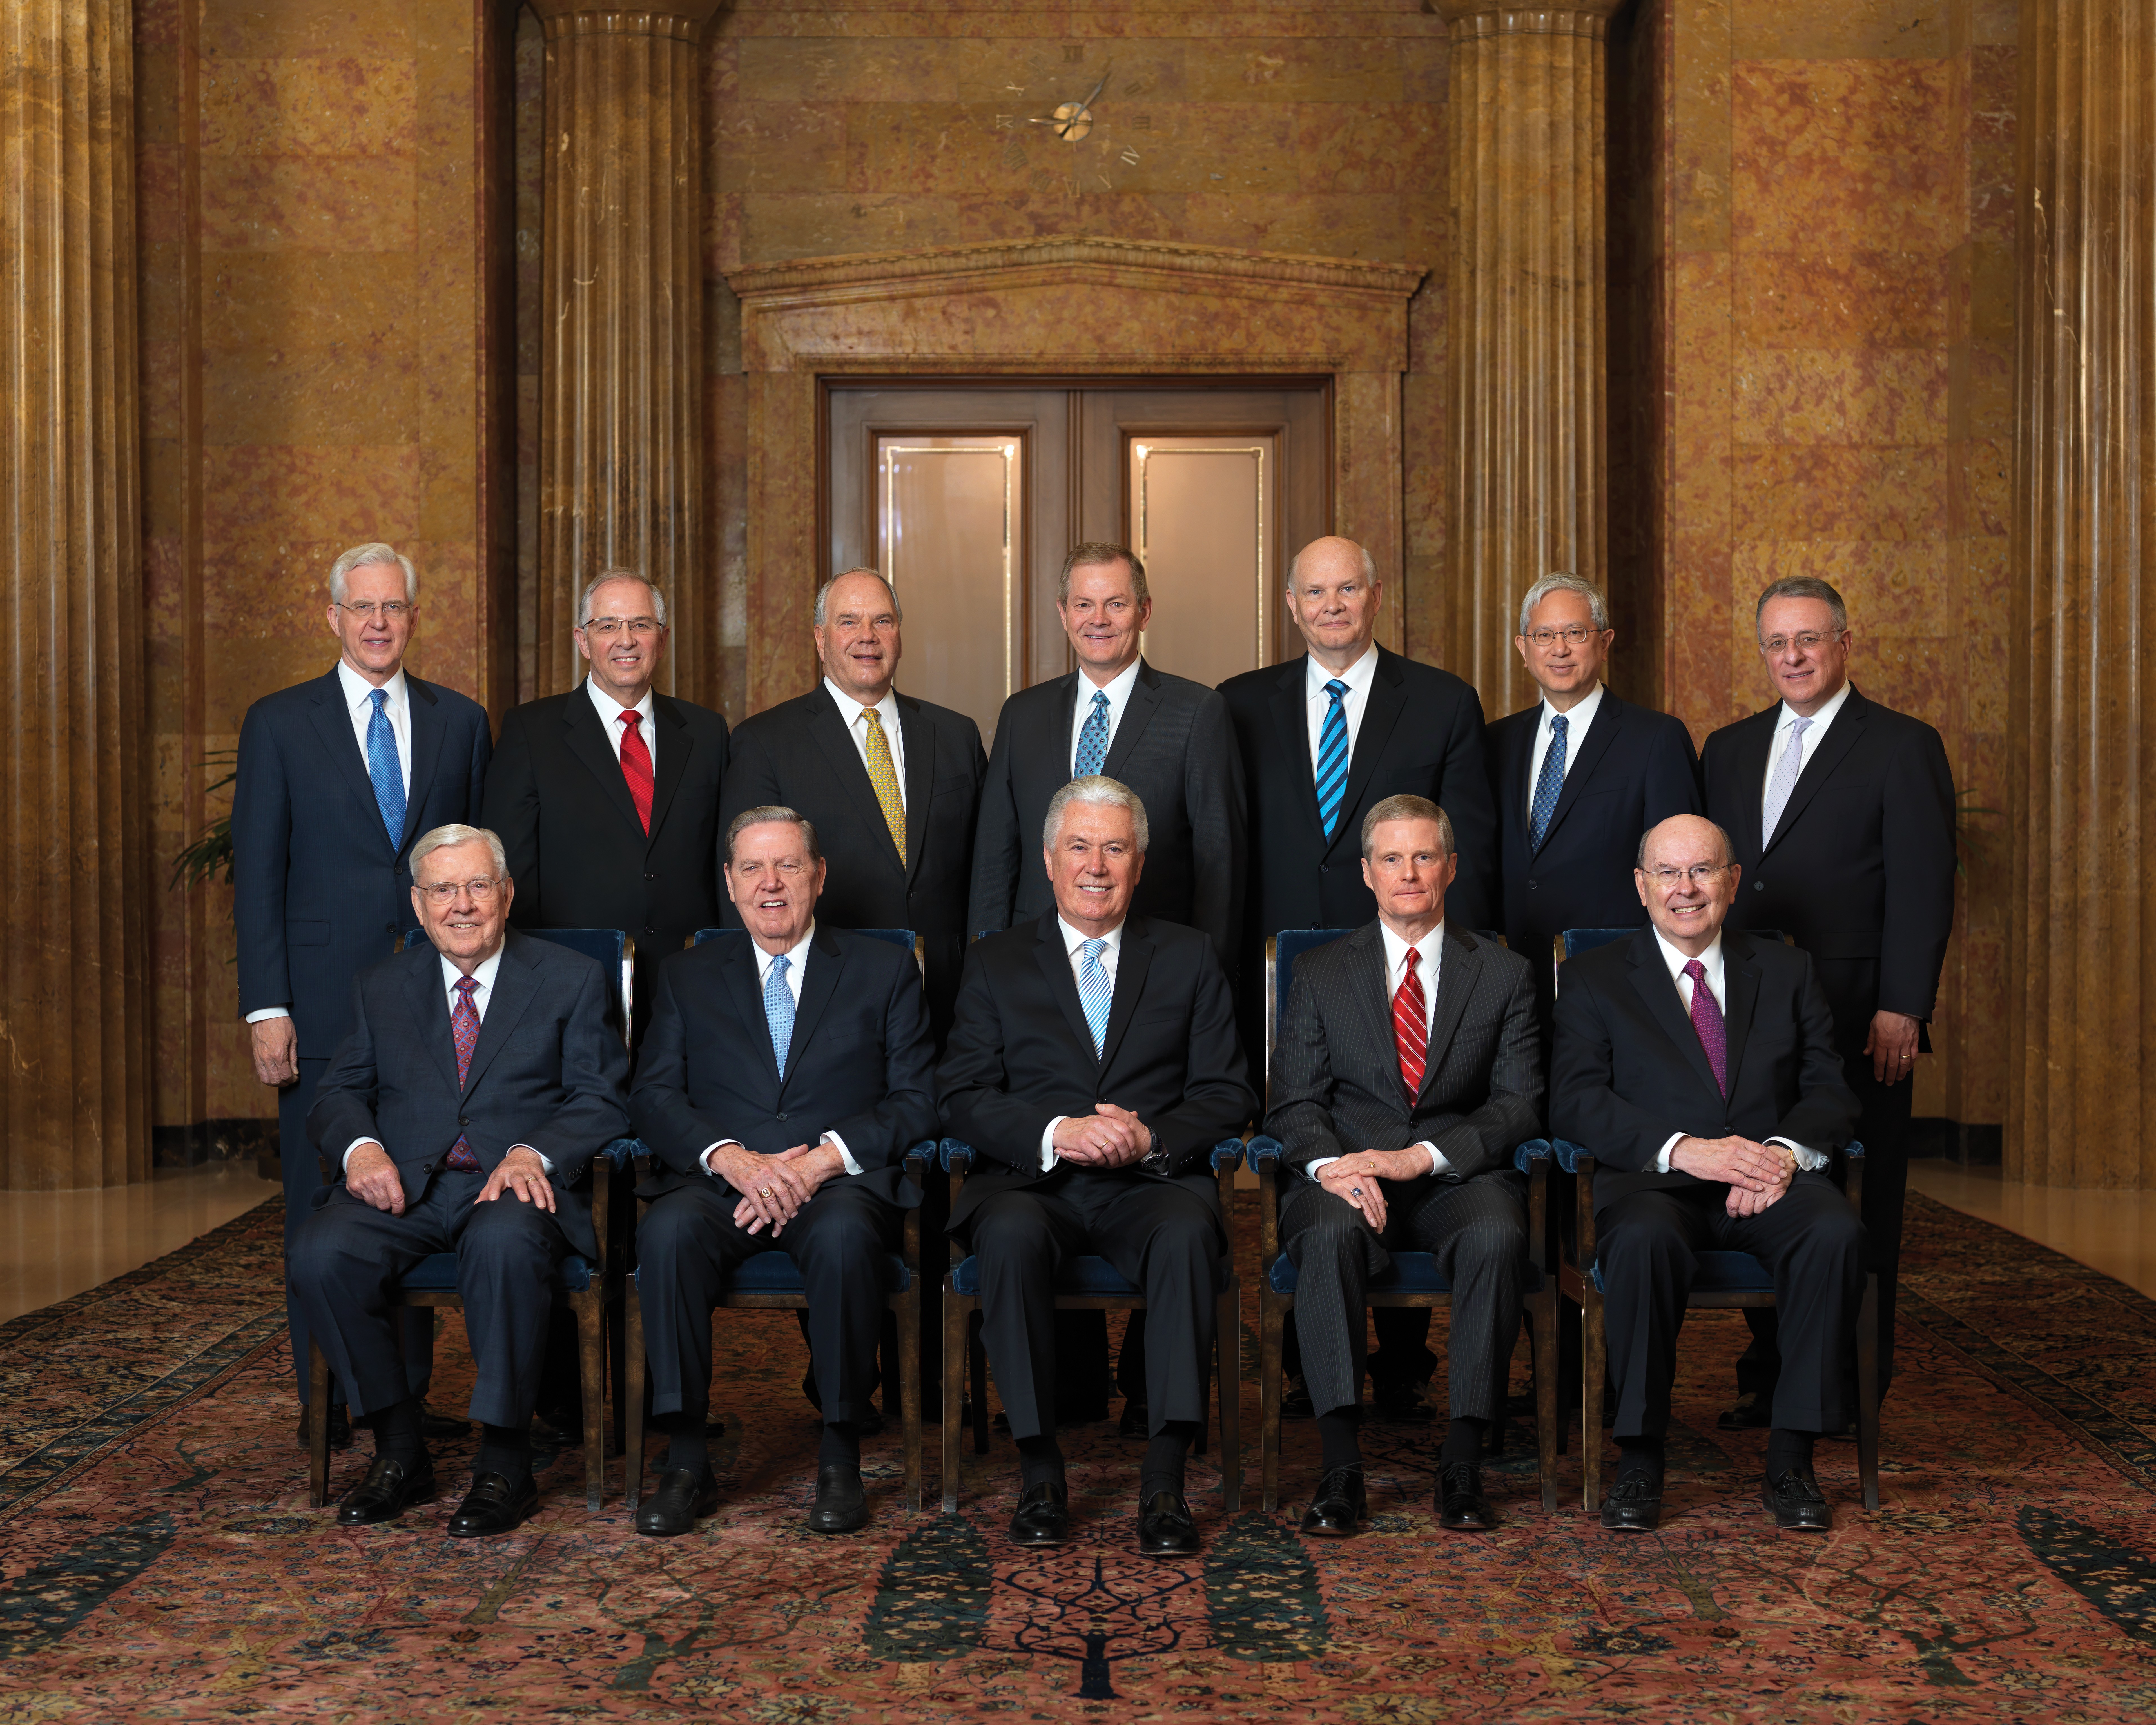 Ritratto ufficiale di gruppo del Quorum dei Dodici Apostoli.